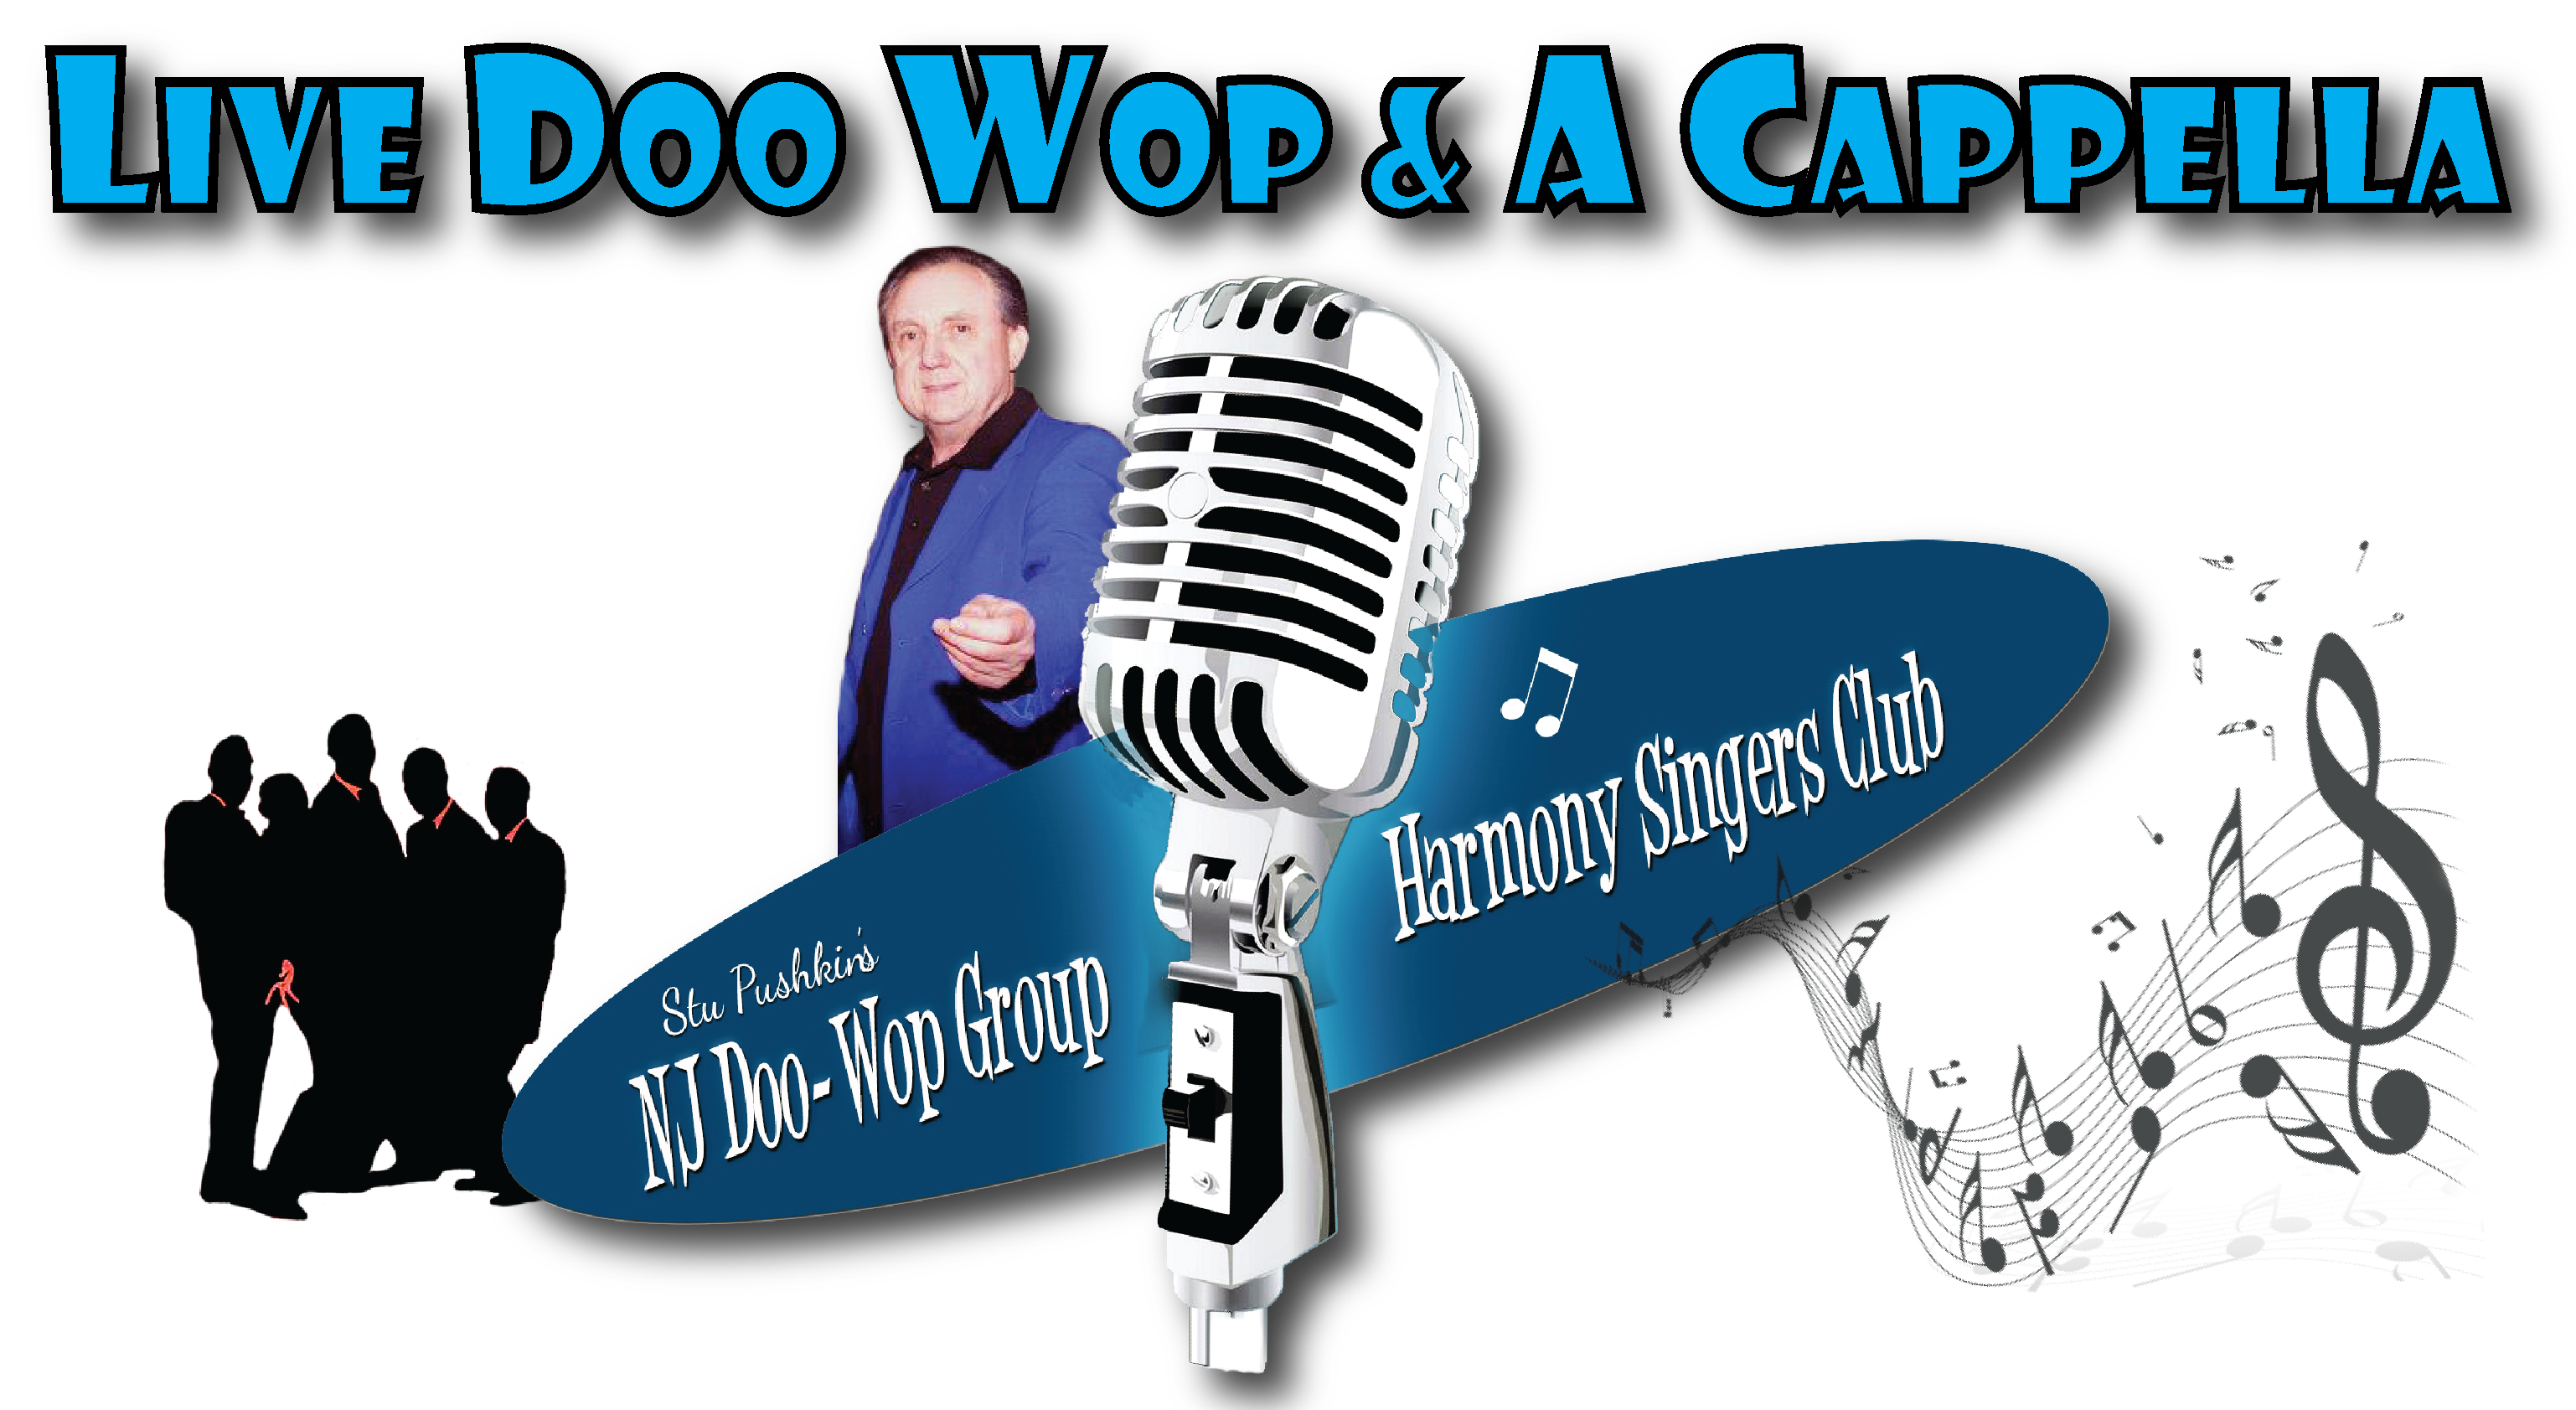 Doo Wop Singers Club